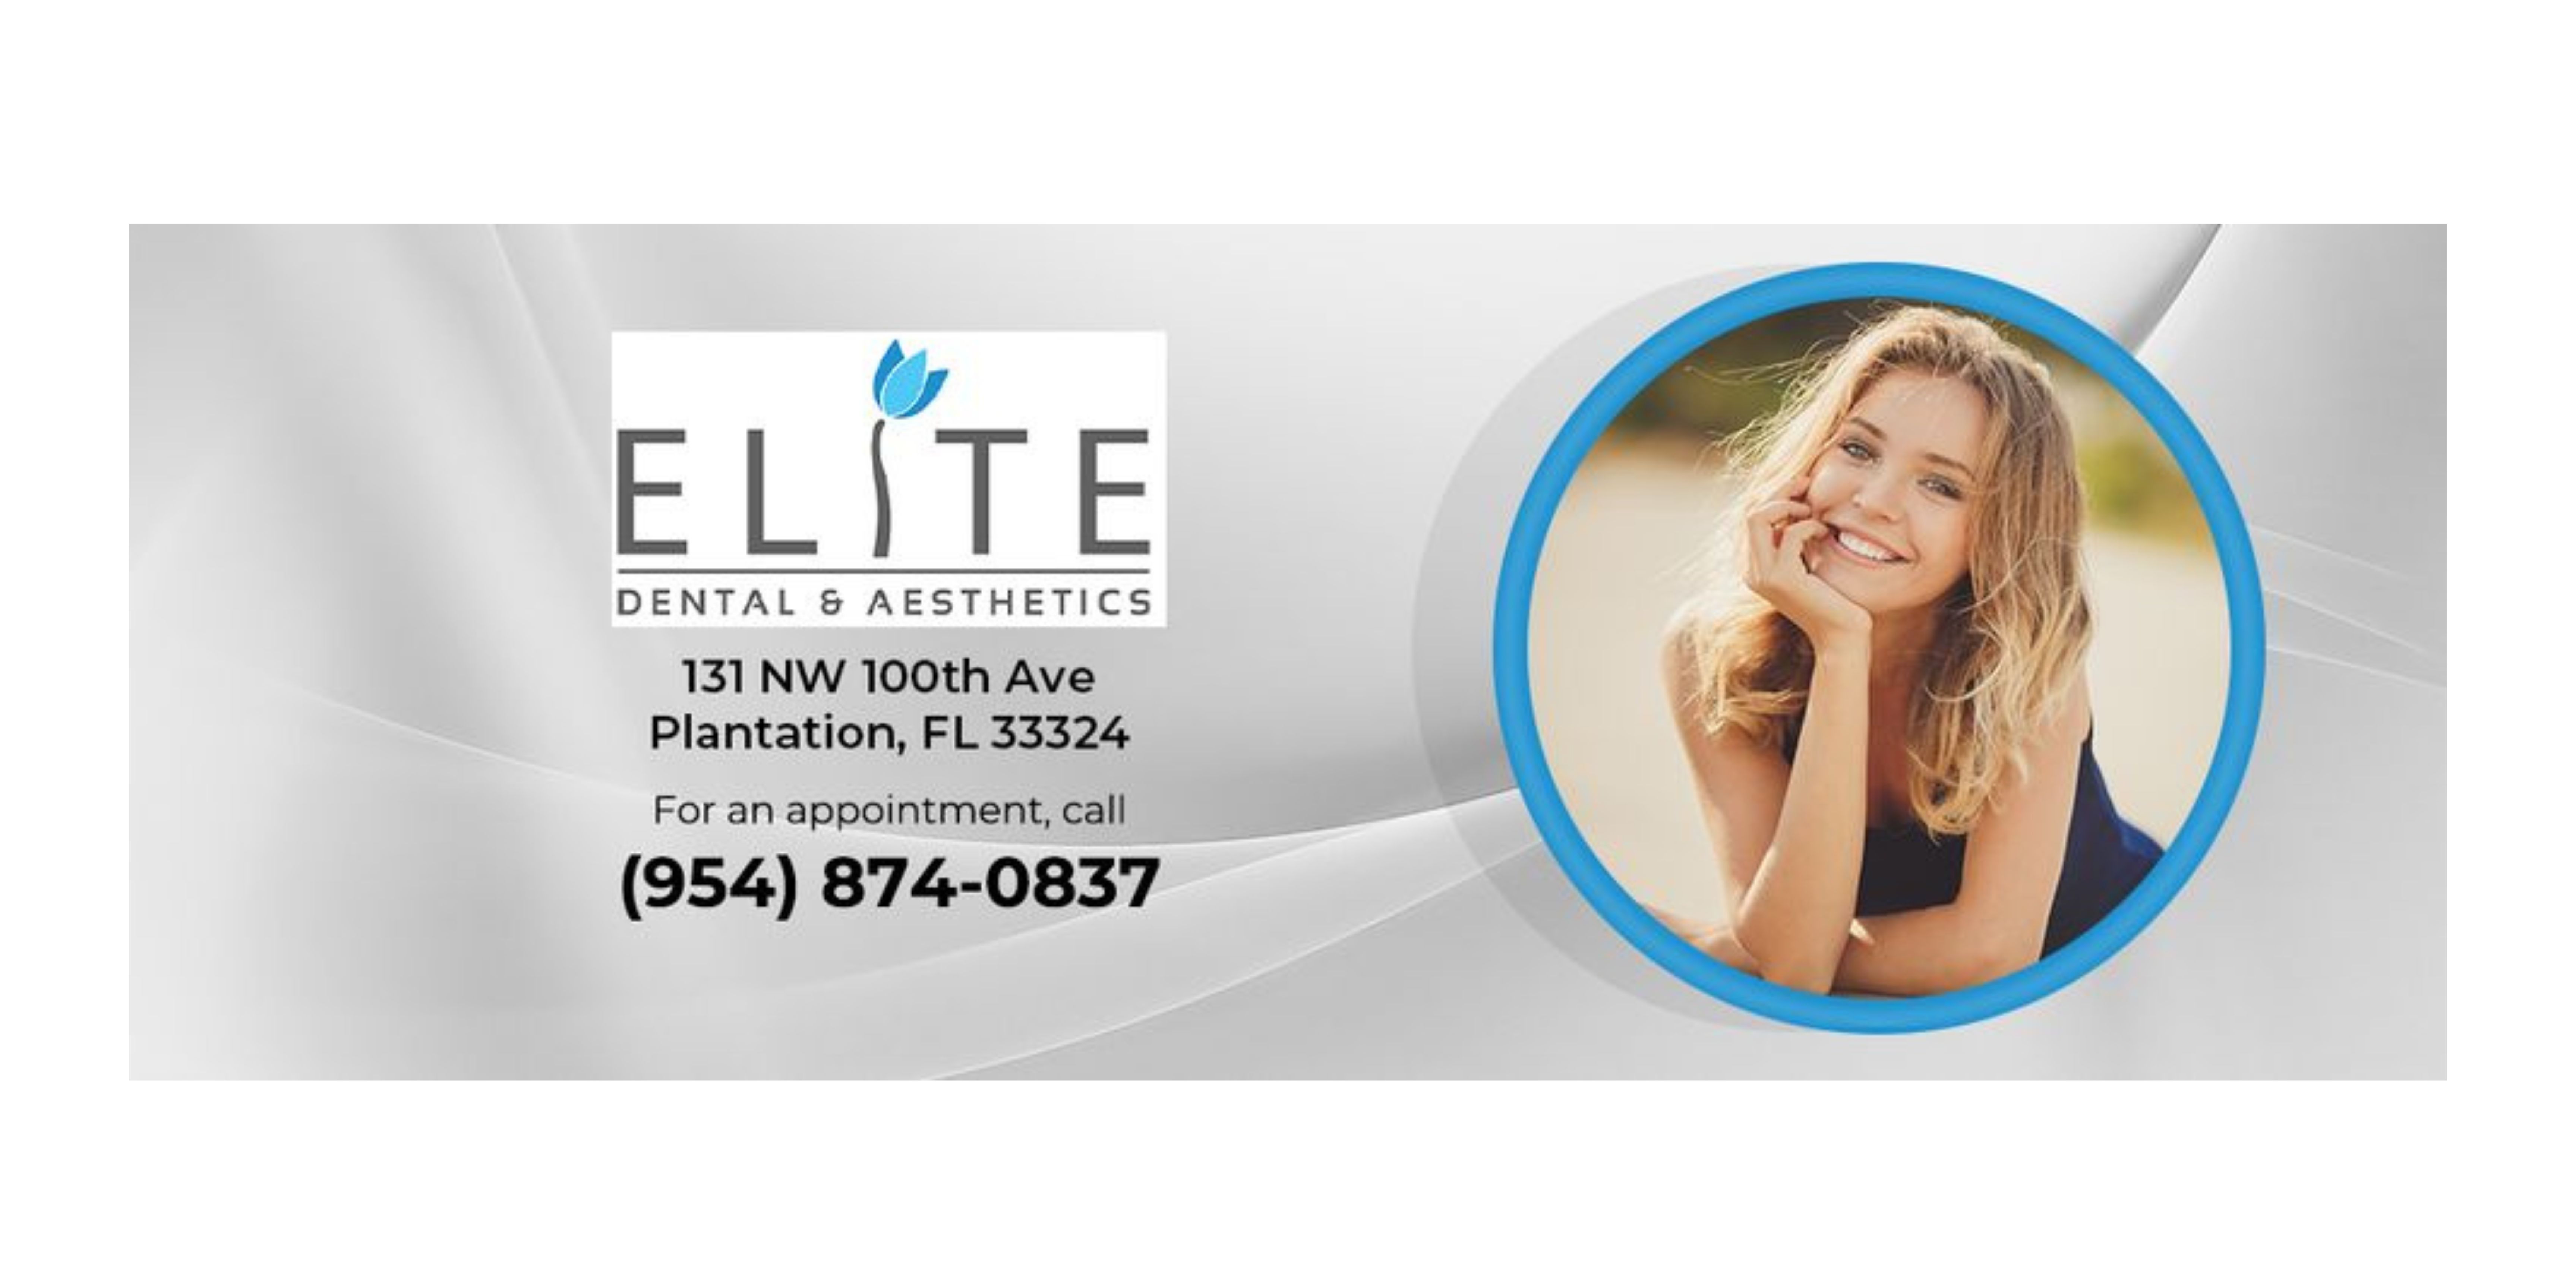 Elite Dental Aesthetics Cover Image